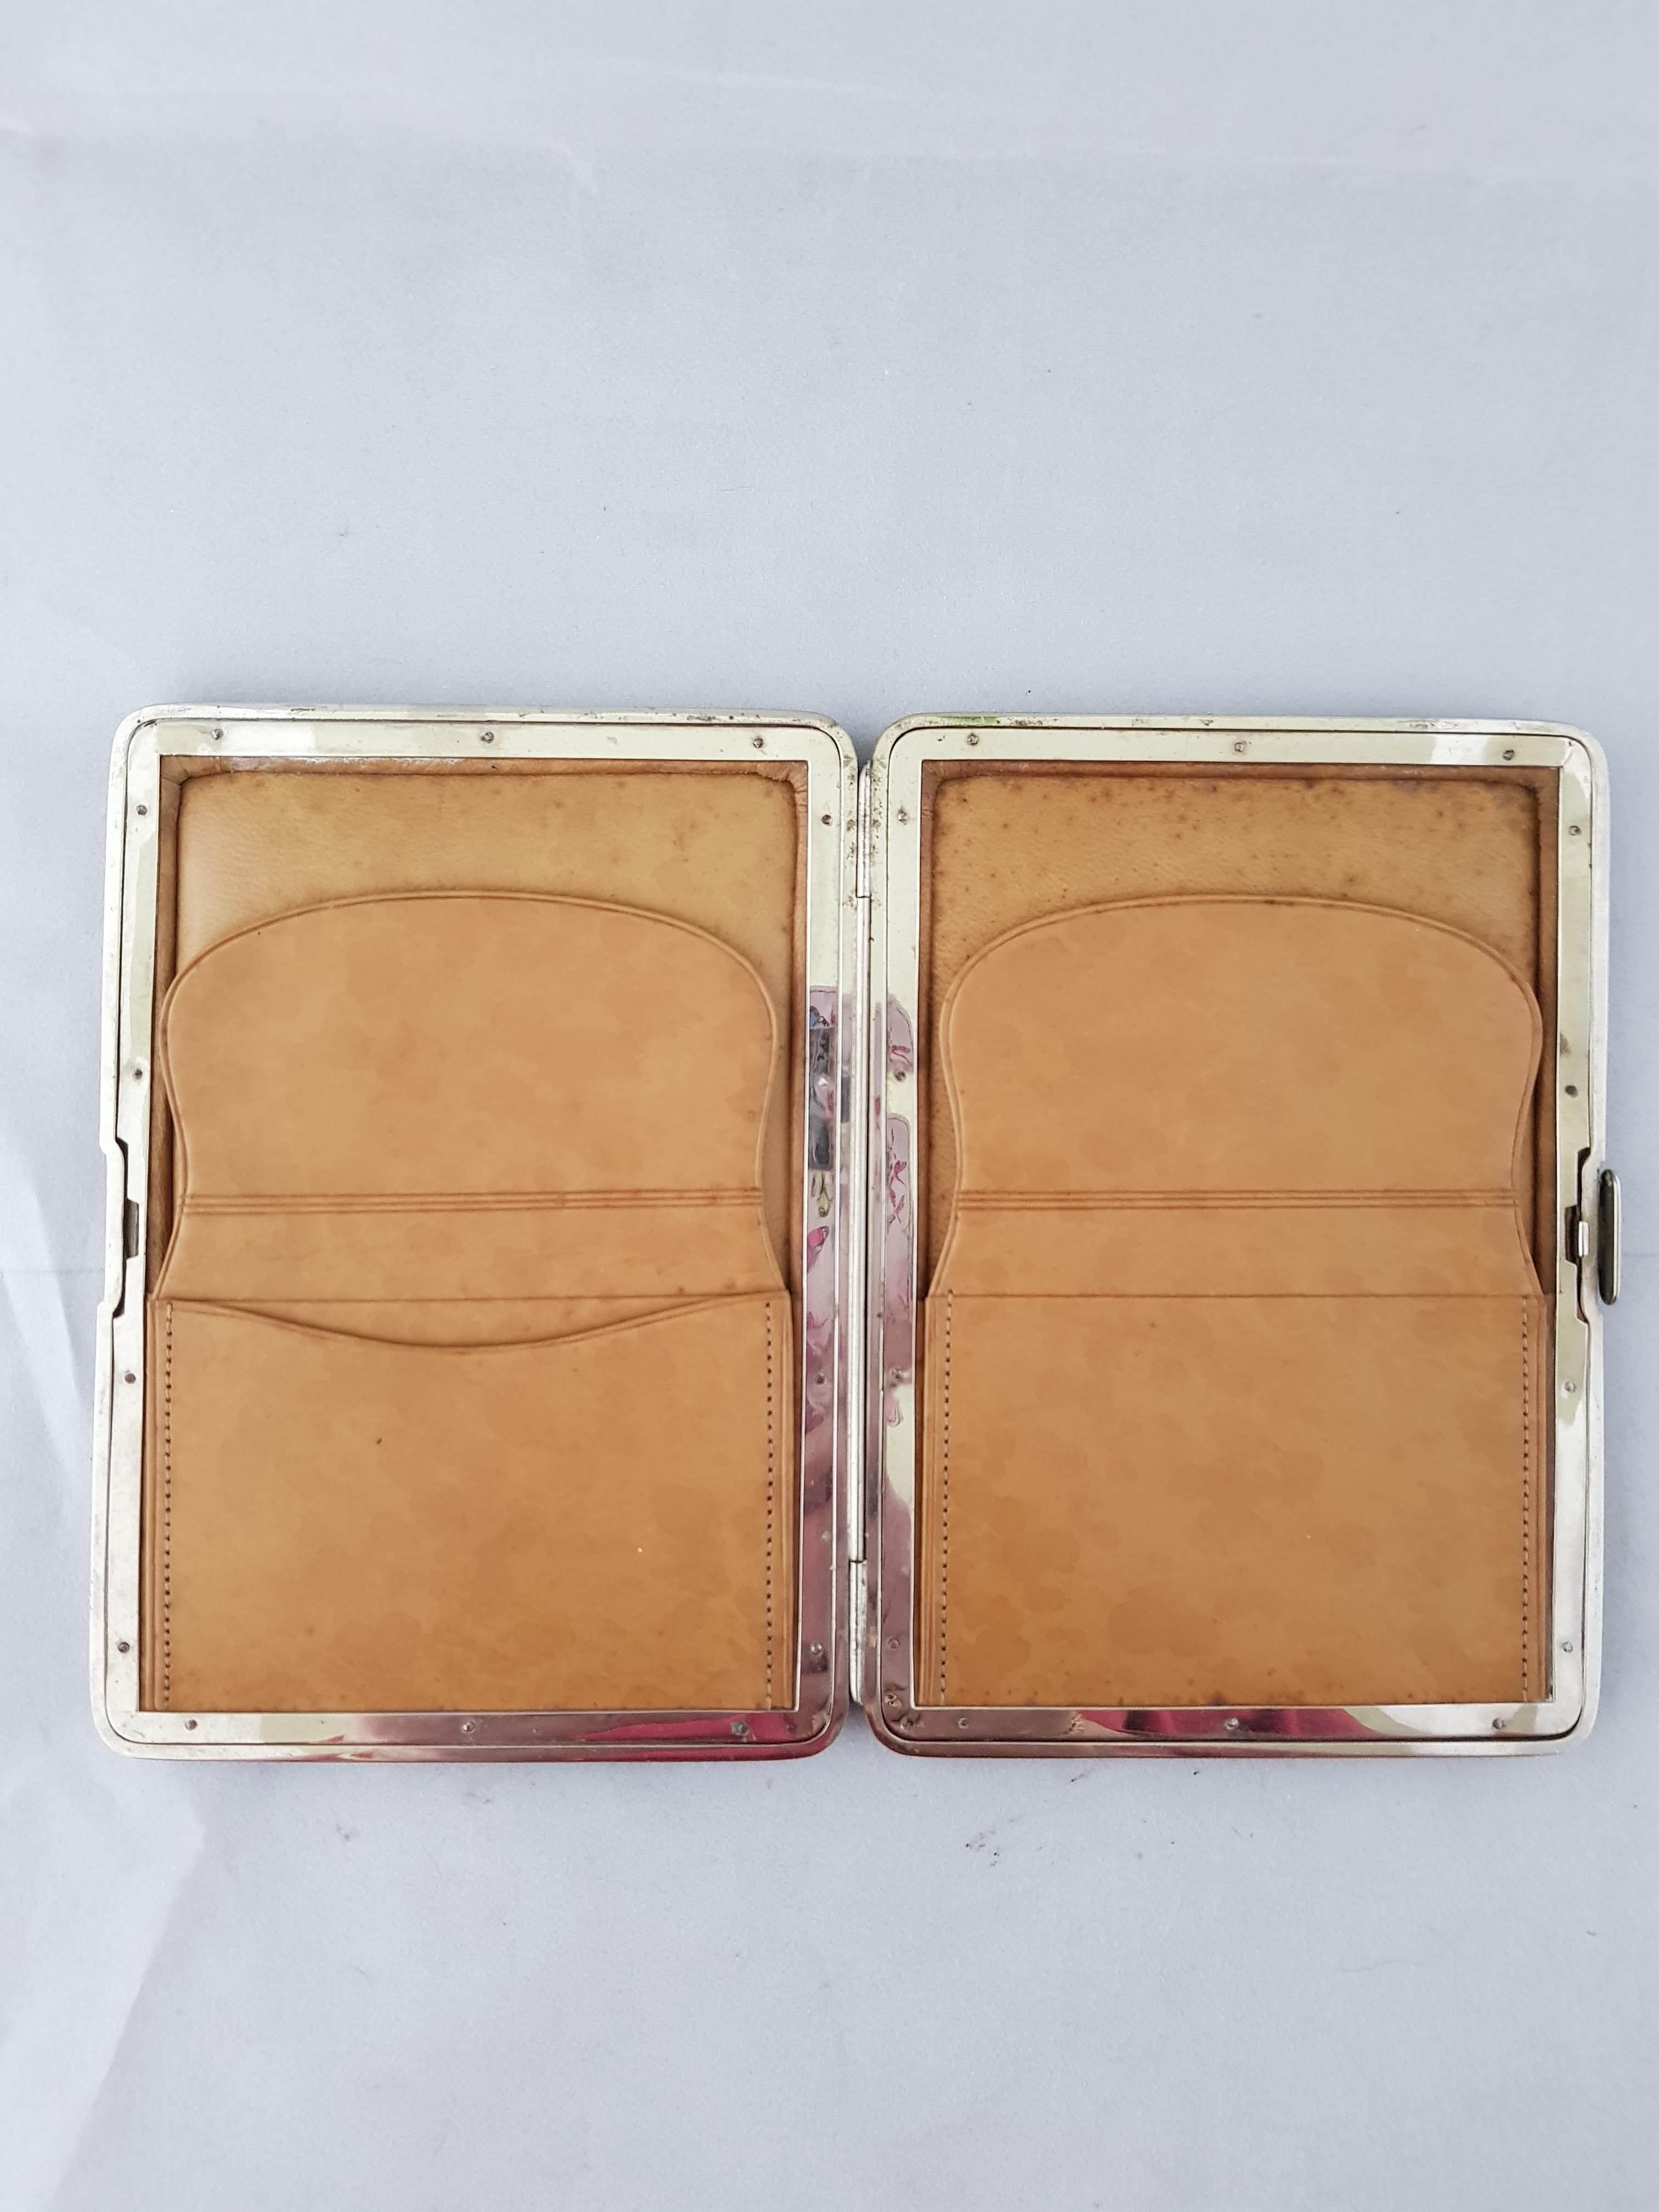 Vintage Cigarette Cases - Image 2 of 3